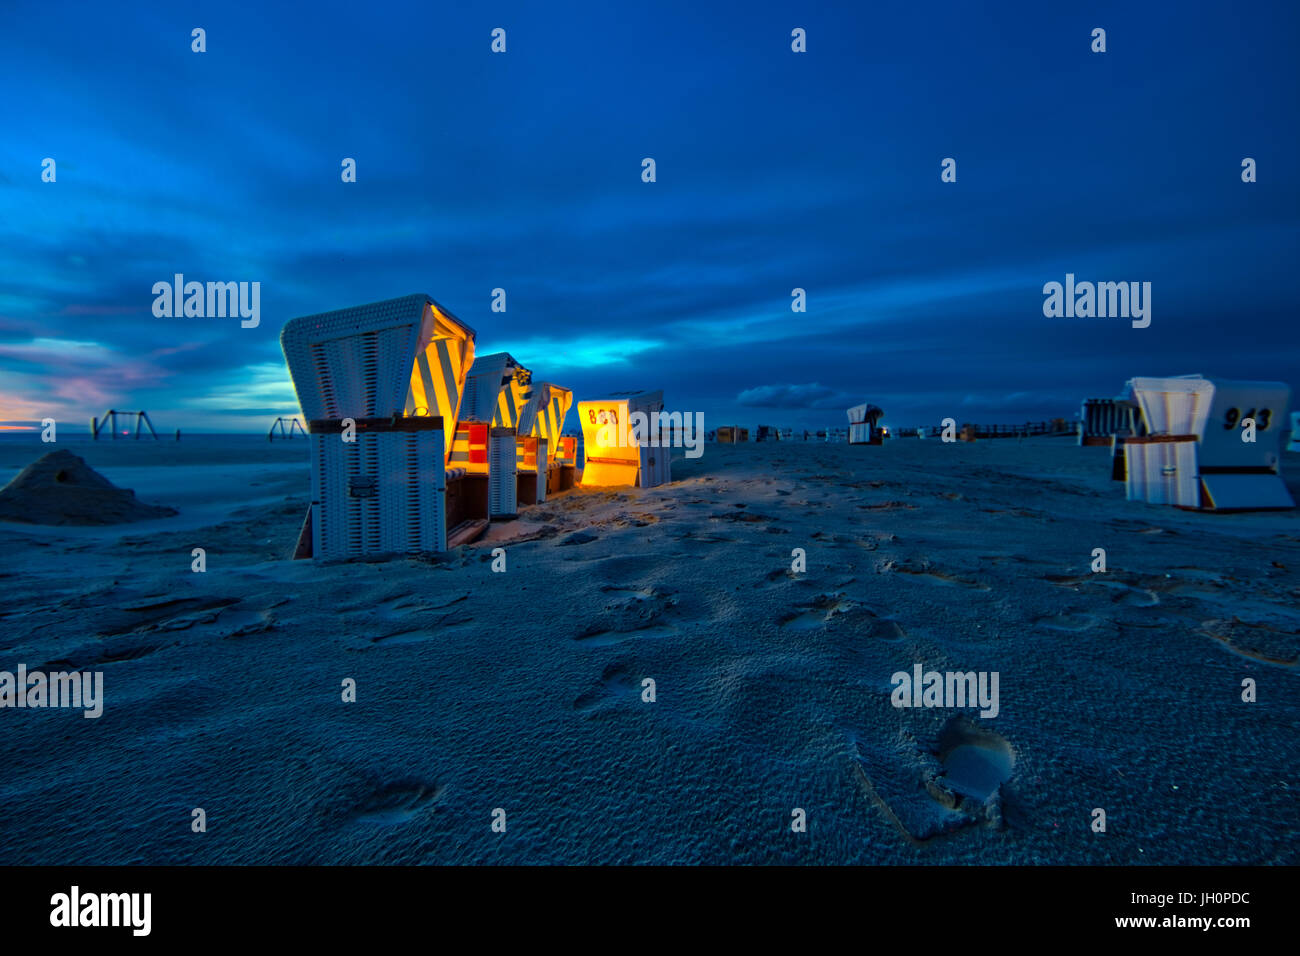 Crepúsculo en la playa de hundió Peter Ording en el norte de Alemania. Sillas de playa están iluminadas por luces suaves durante la tormentosa puesta de sol Foto de stock